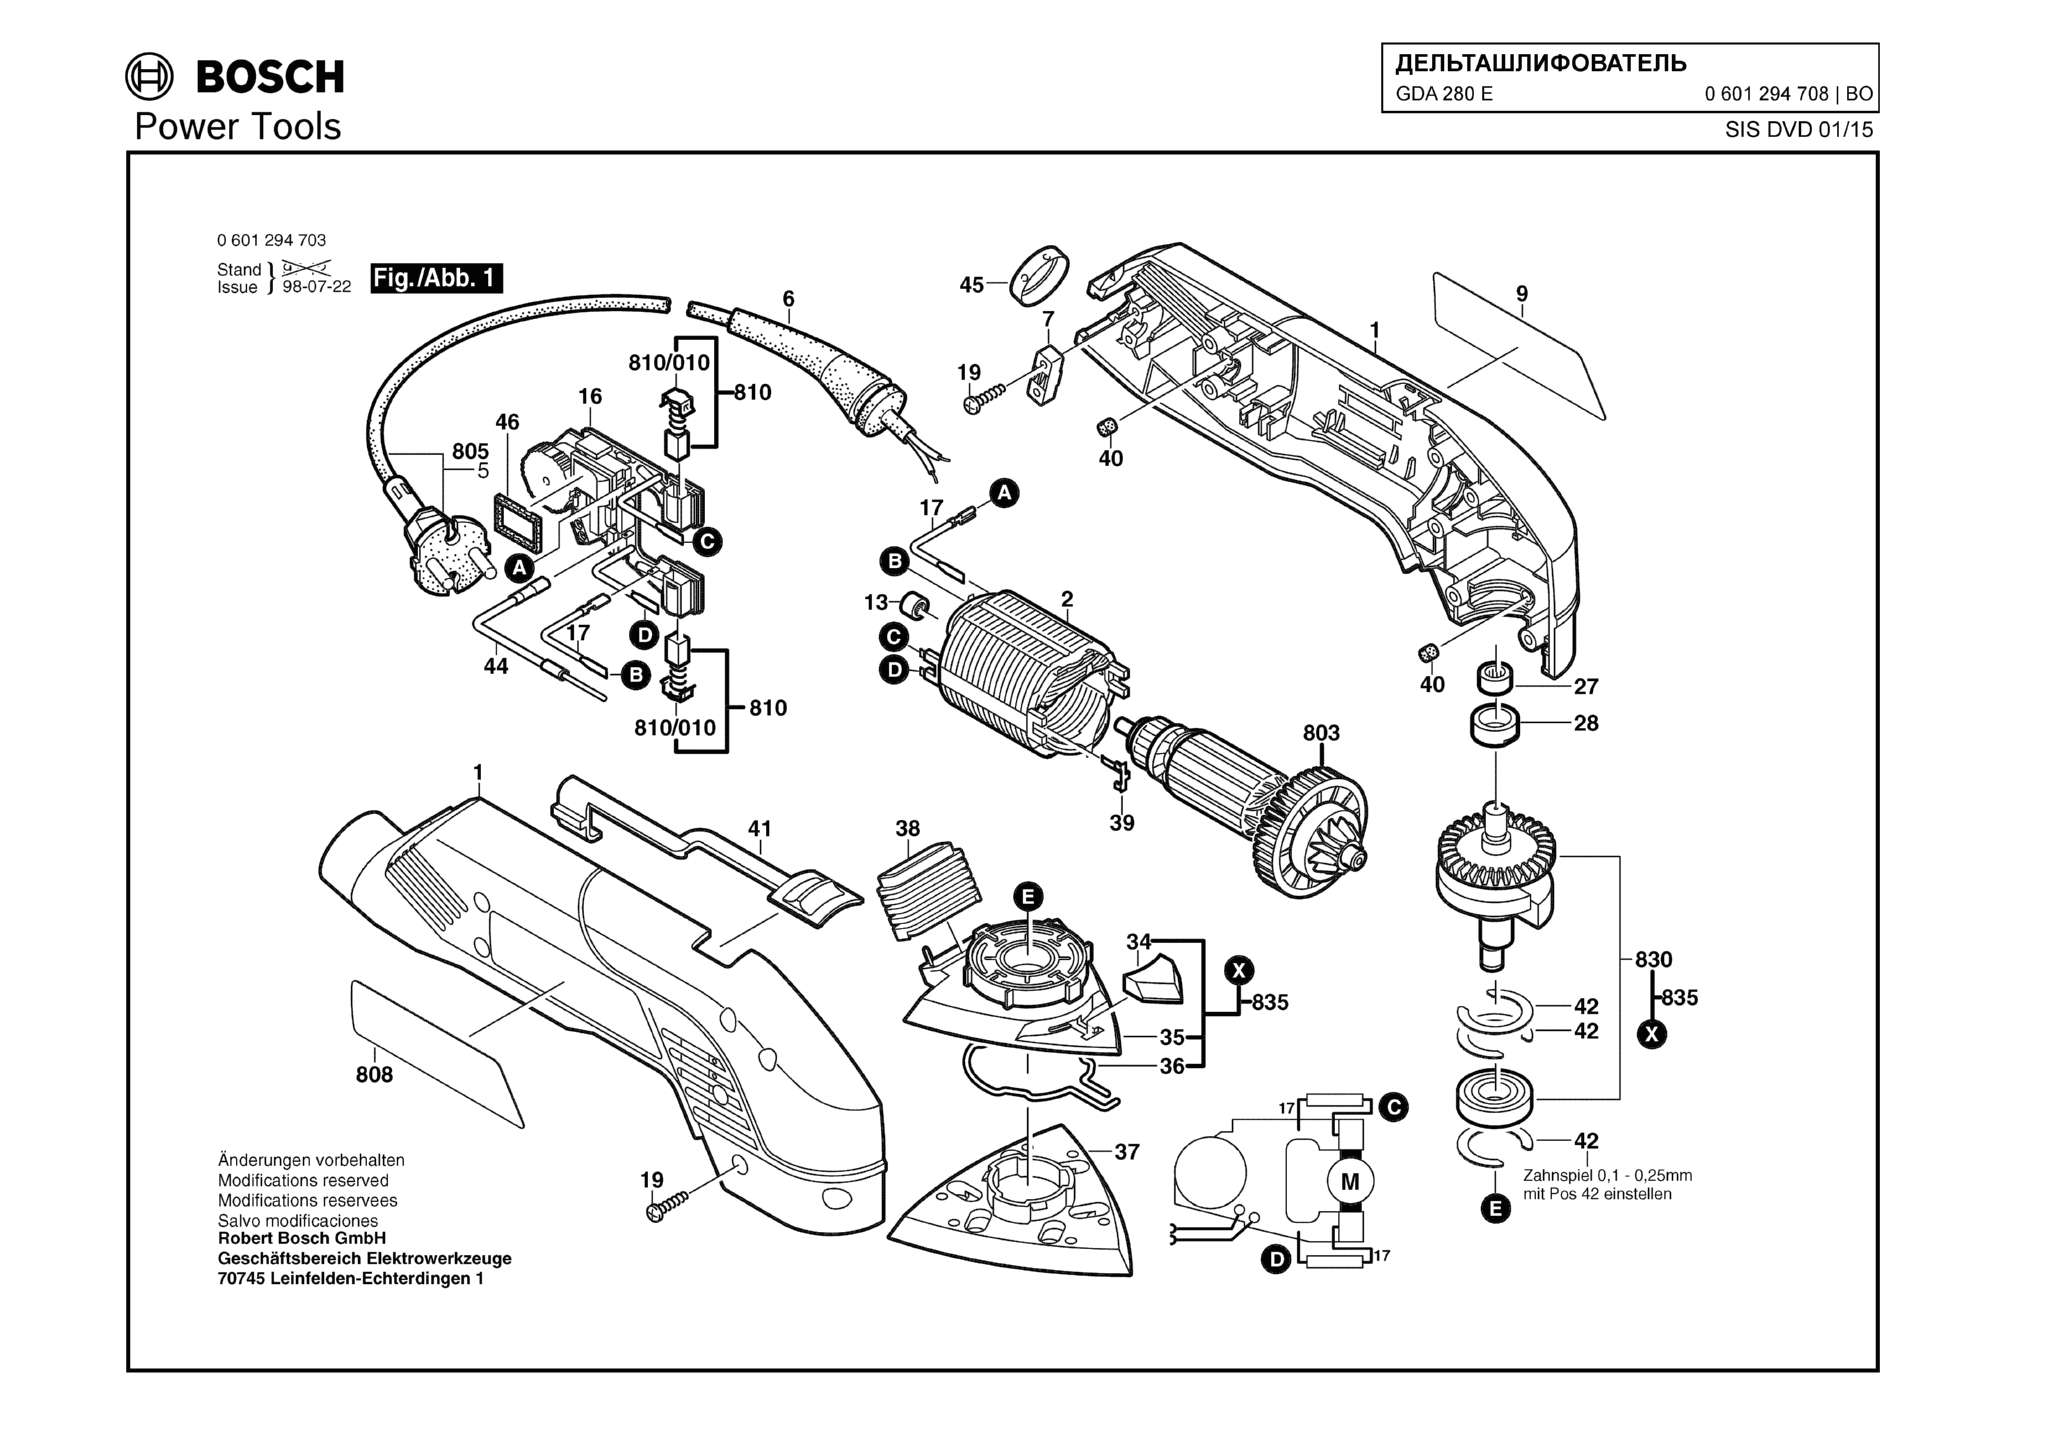 Запчасти, схема и деталировка Bosch GDA 280 E (ТИП 0601294708)